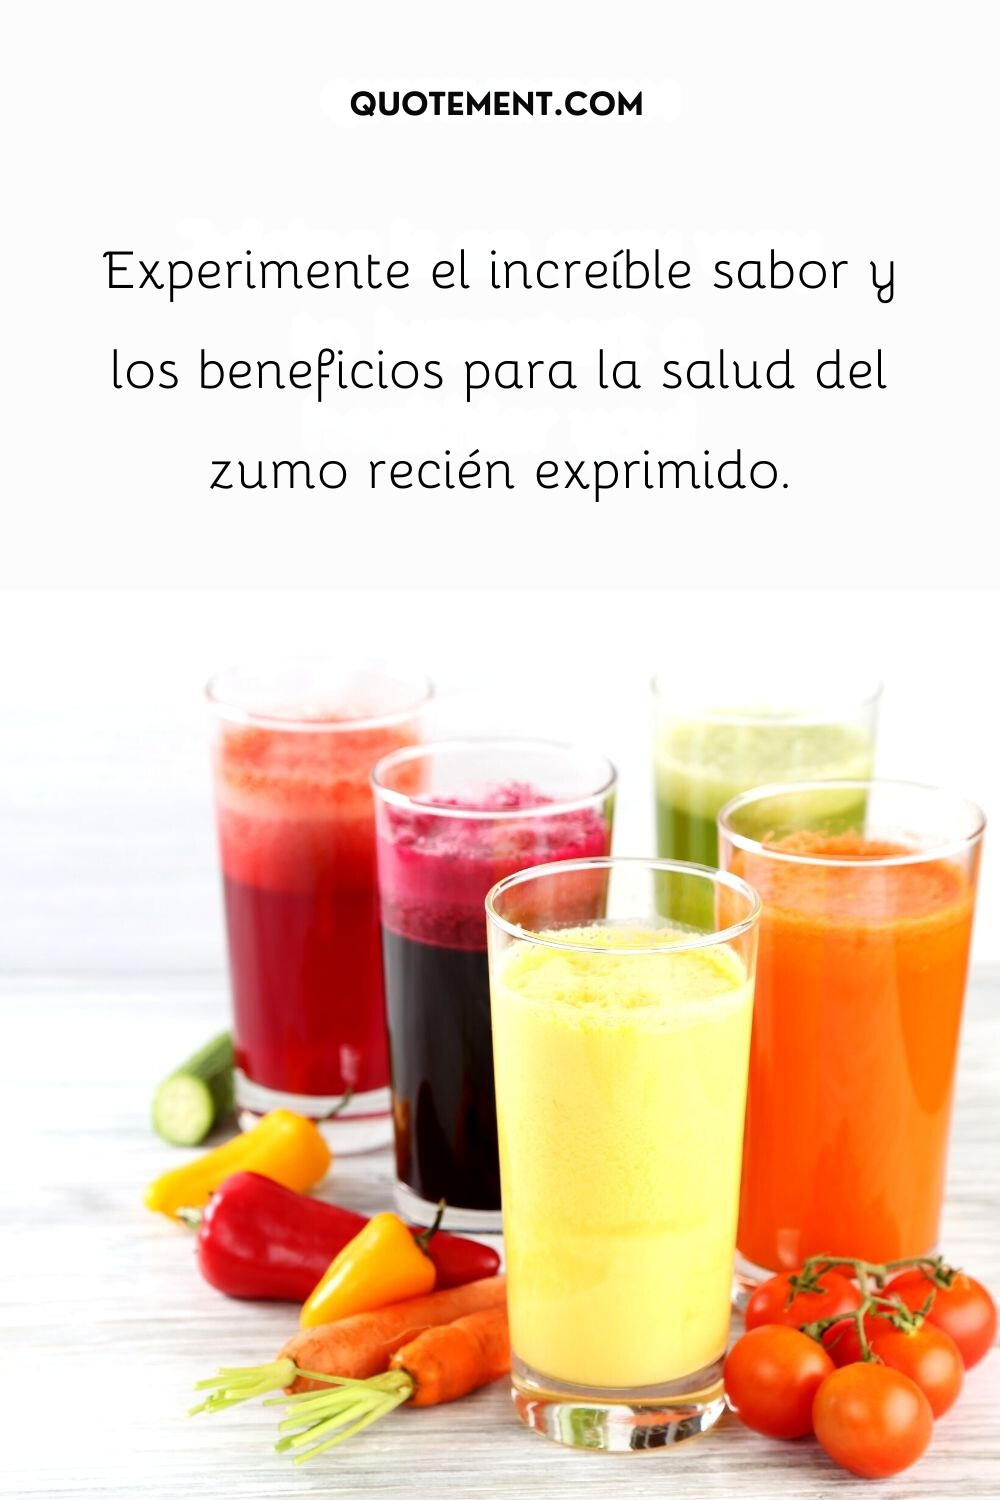 Experimente el increíble sabor y los beneficios para la salud del zumo recién exprimido